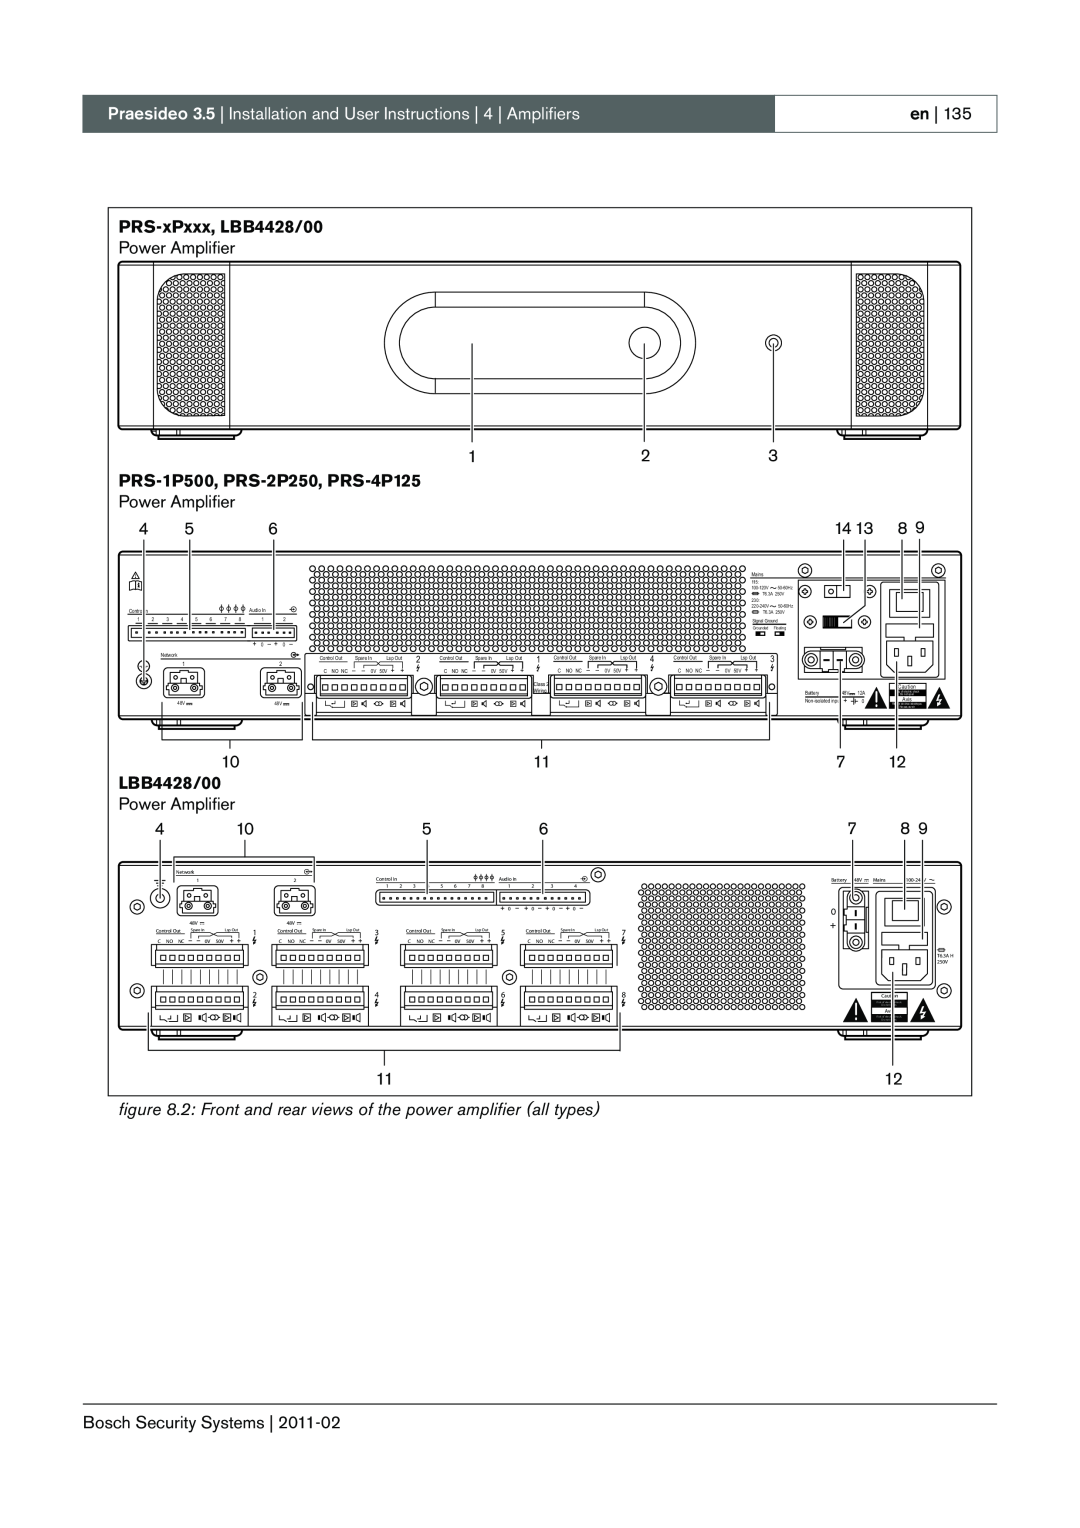 Bosch Appliances 3.5 manual PRS-xPxxx,LBB4428/00, PRS-1P500, PRS-2P250, PRS-4P125 